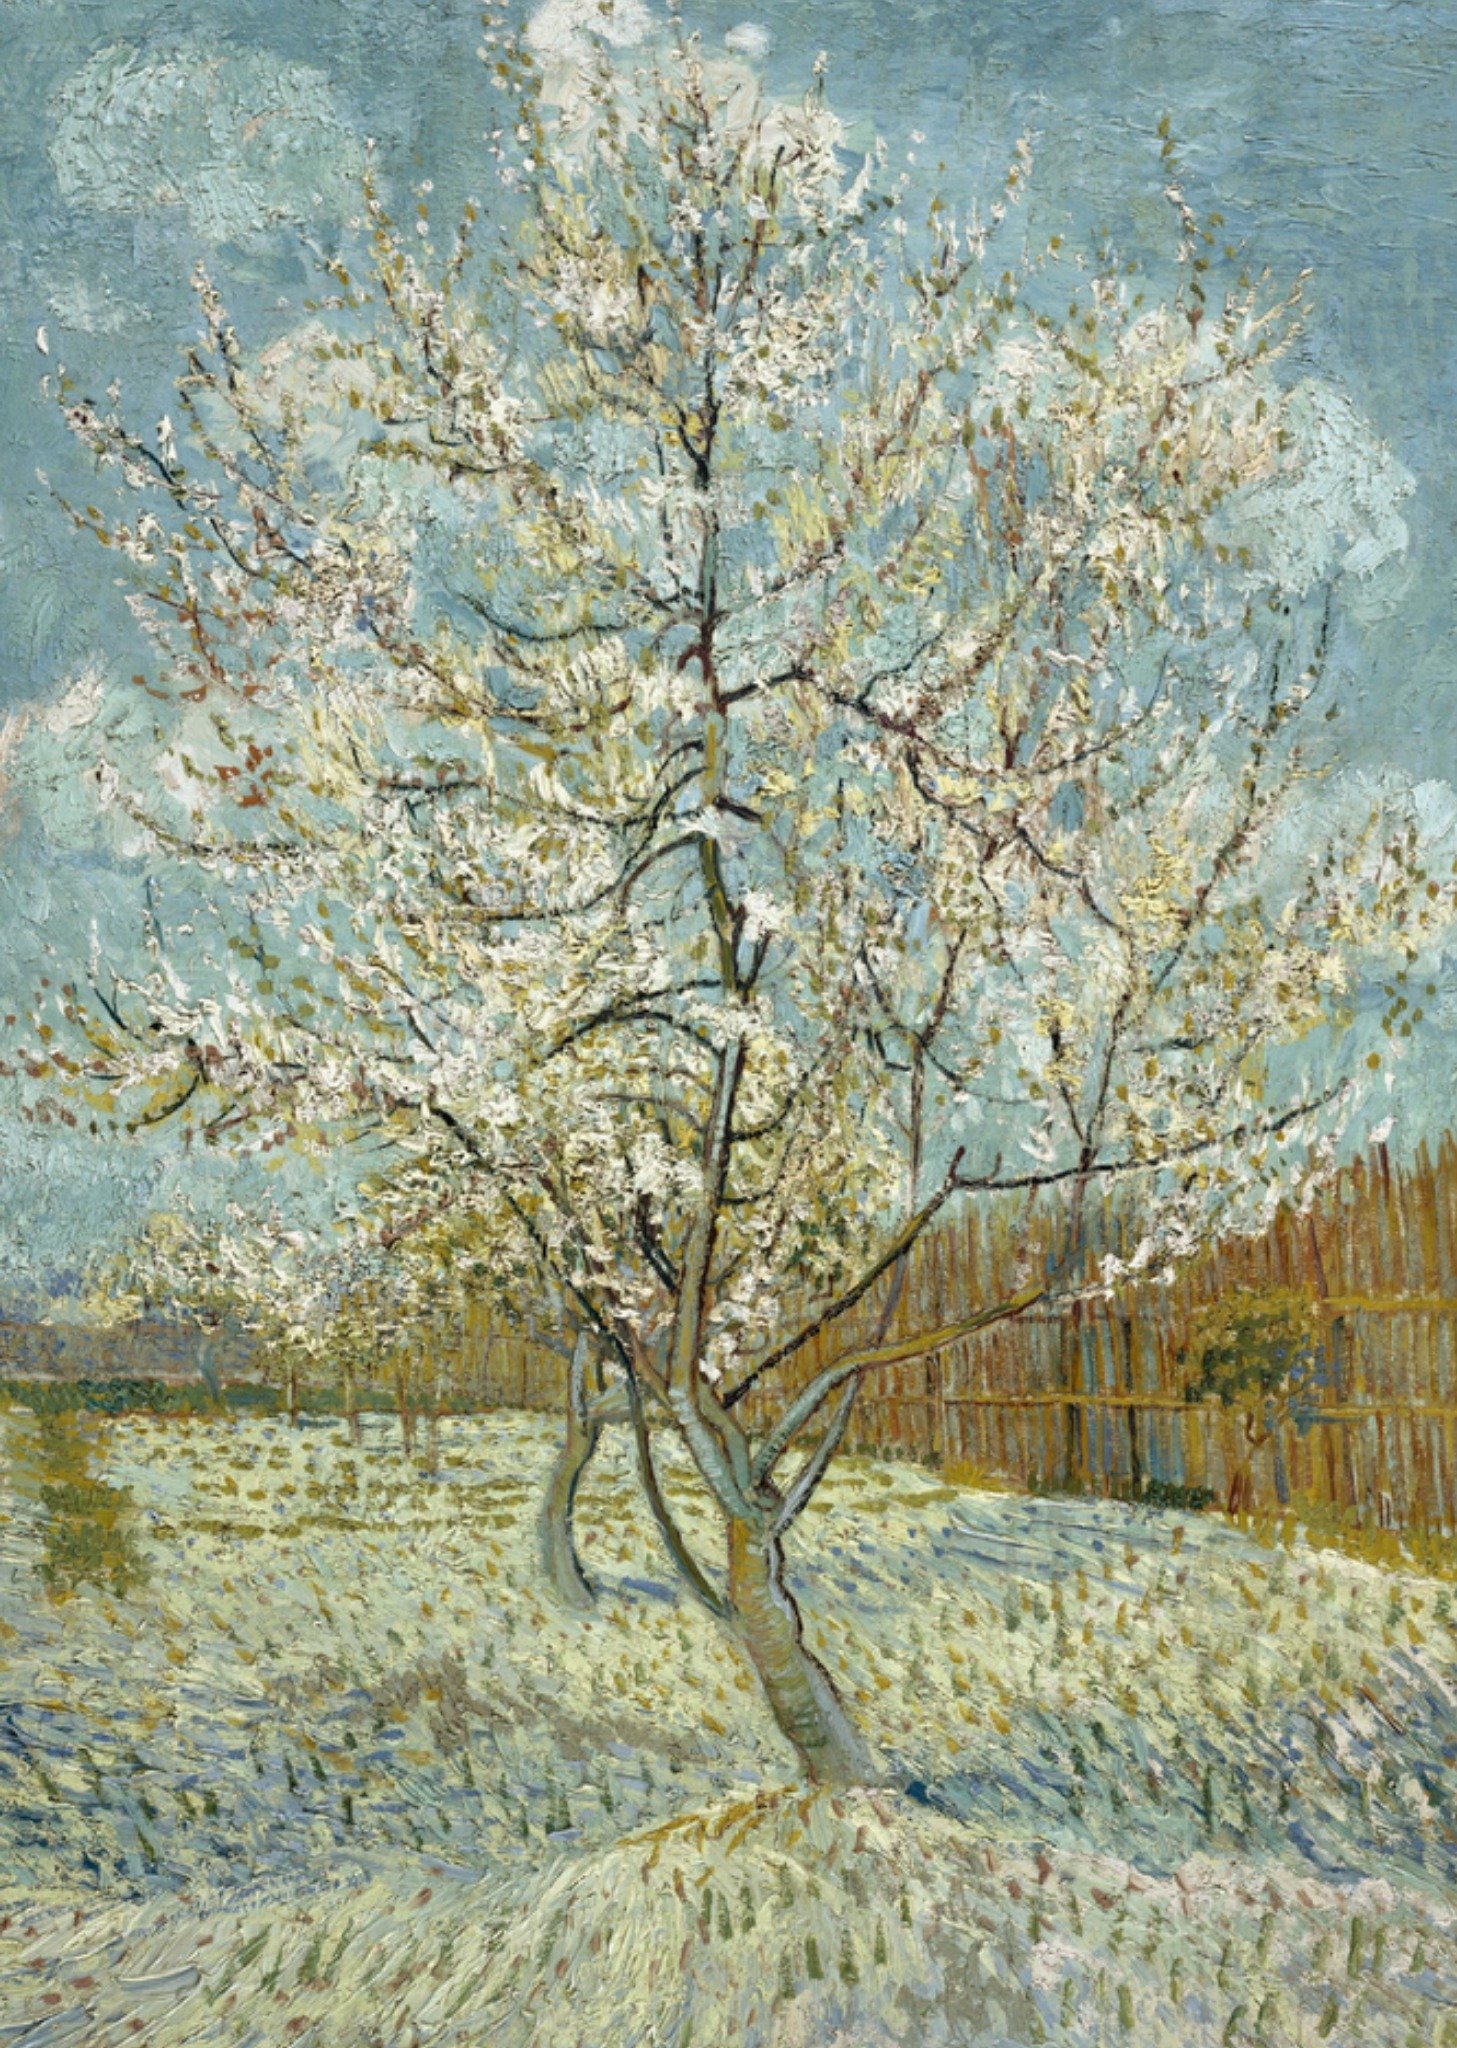 Kunstkaart De roze perzikboom - Vincent van Gogh